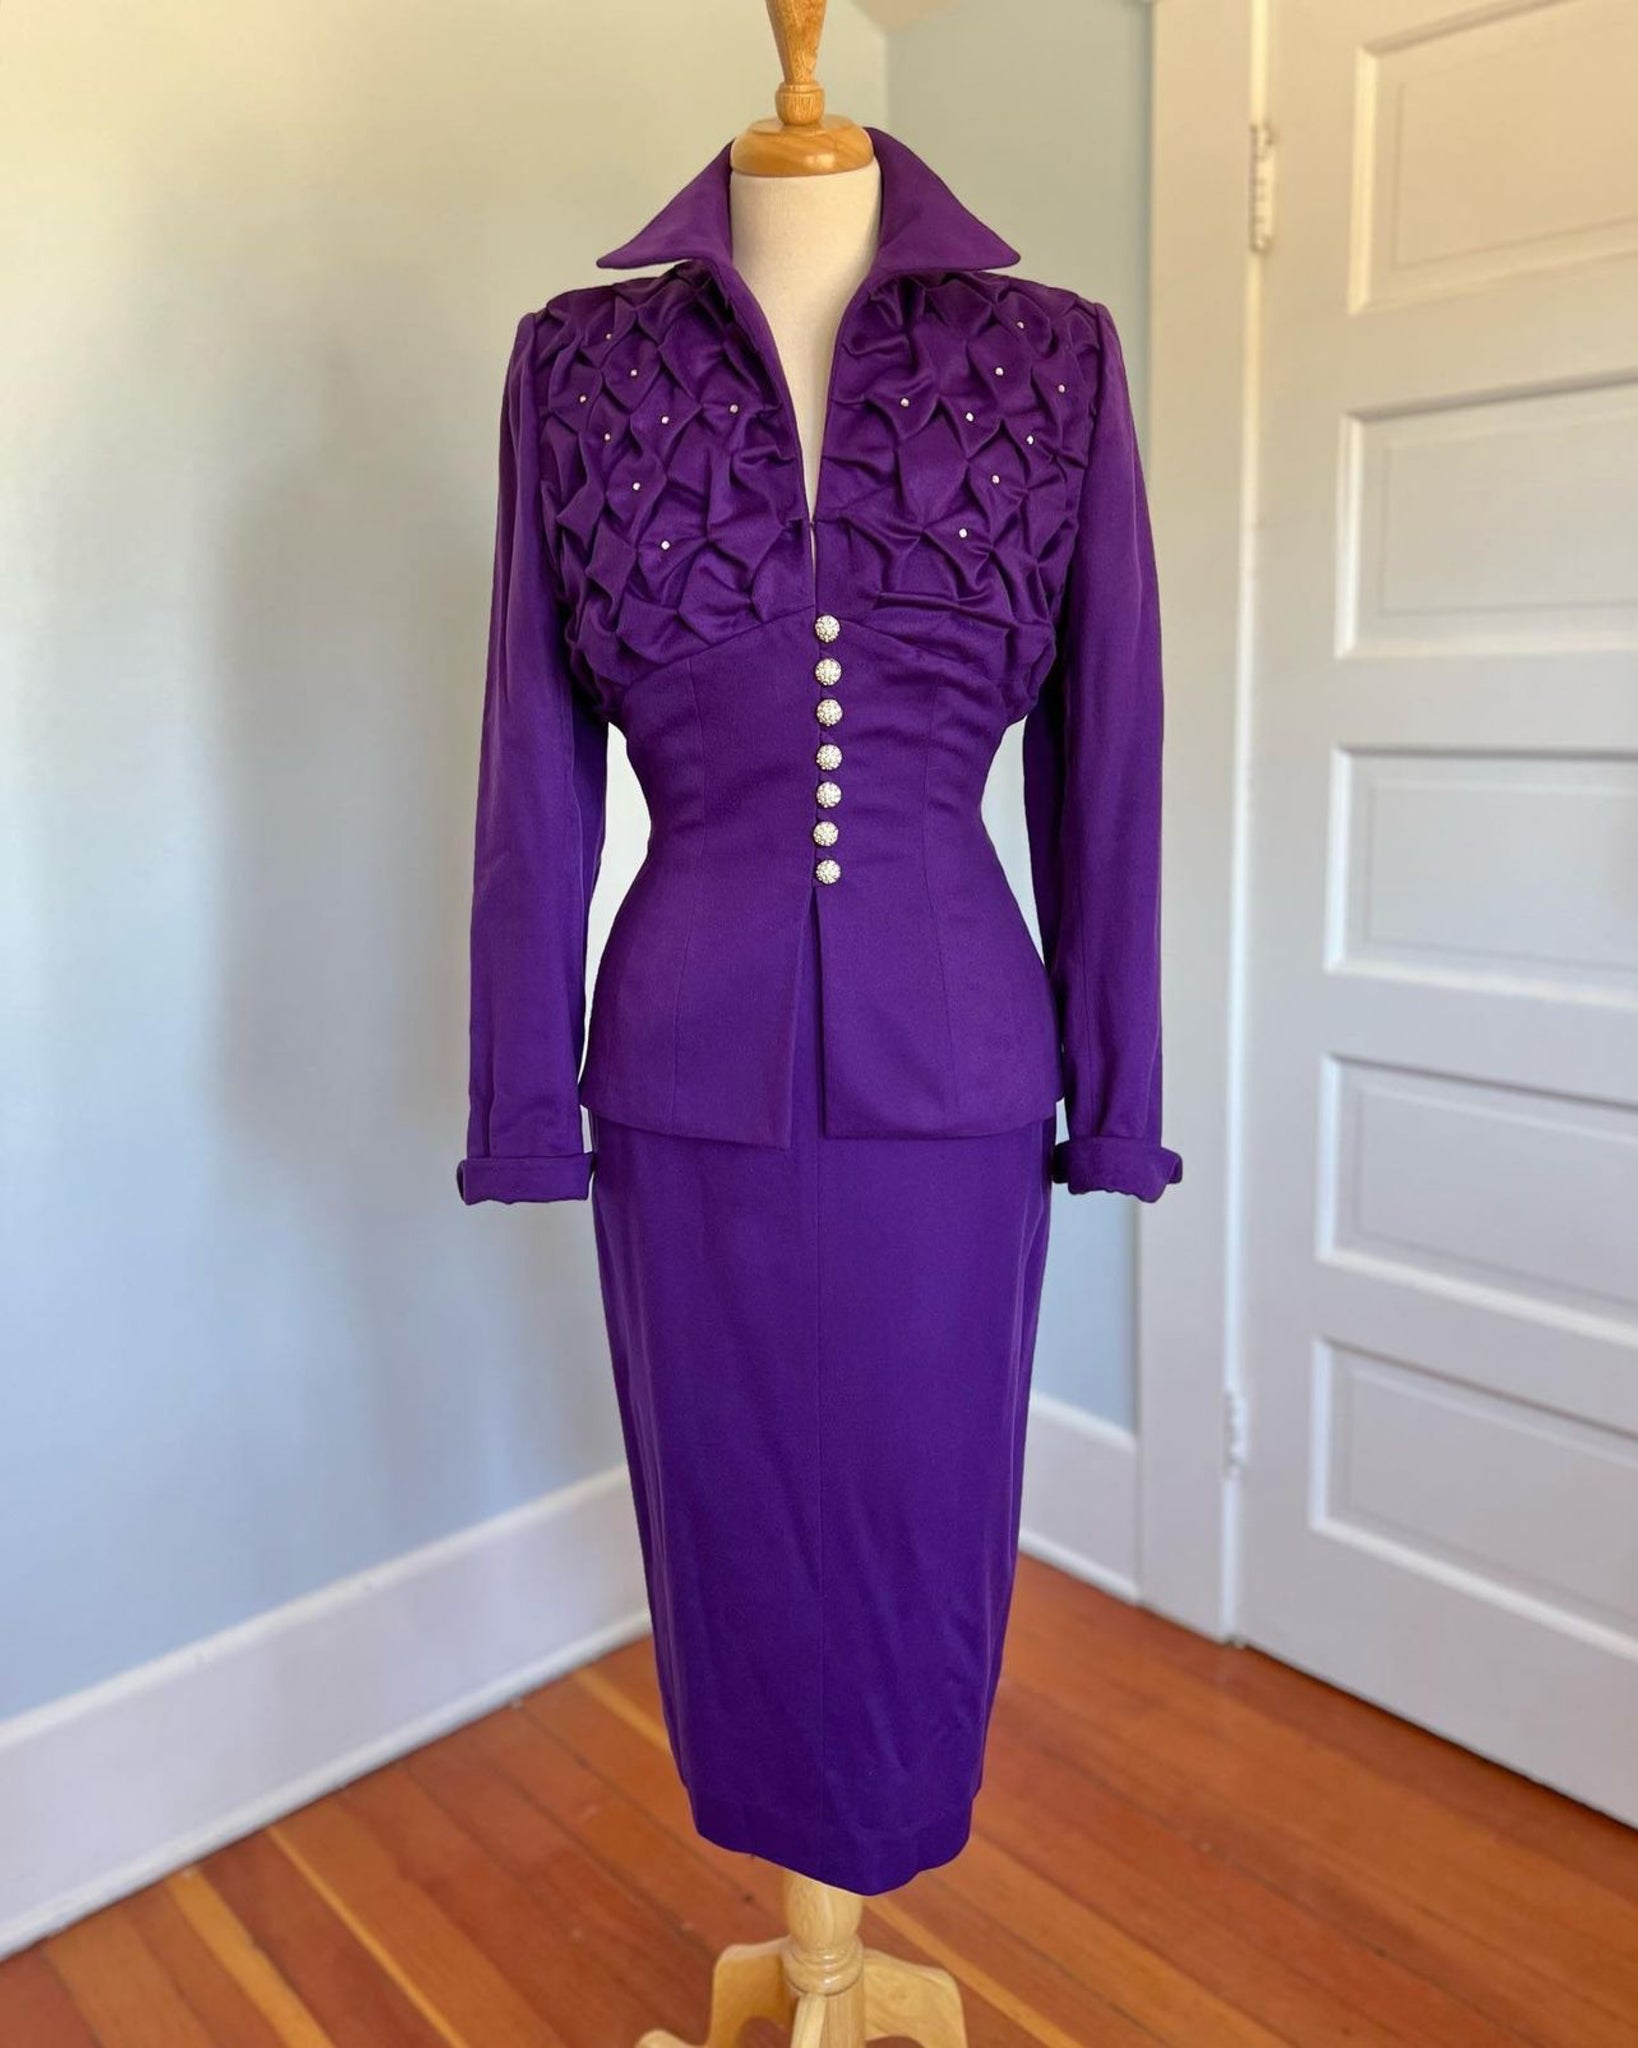 Documented 1954 “Lilli Ann of Paris & San Francisco” Cashmere Couture Cocktail Suit